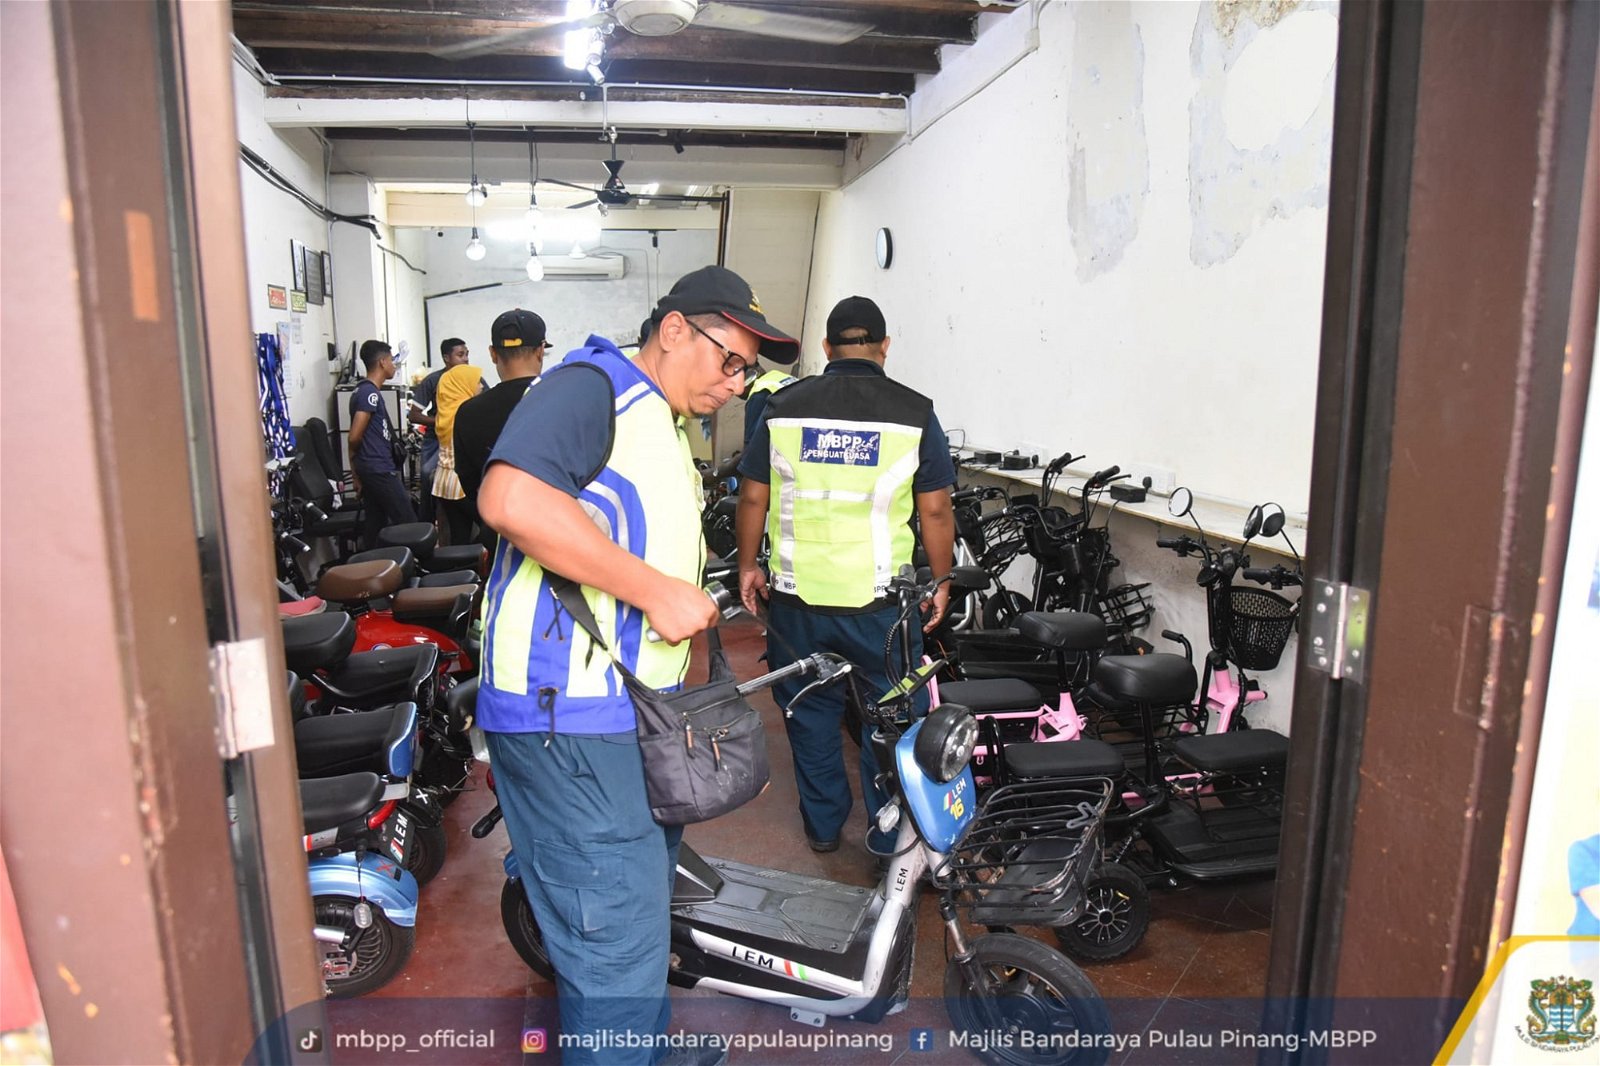 在槟岛市政厅官员的调查下，乔治市内总共有5间电动滑板车出租店，并派员直接上门取缔充公。